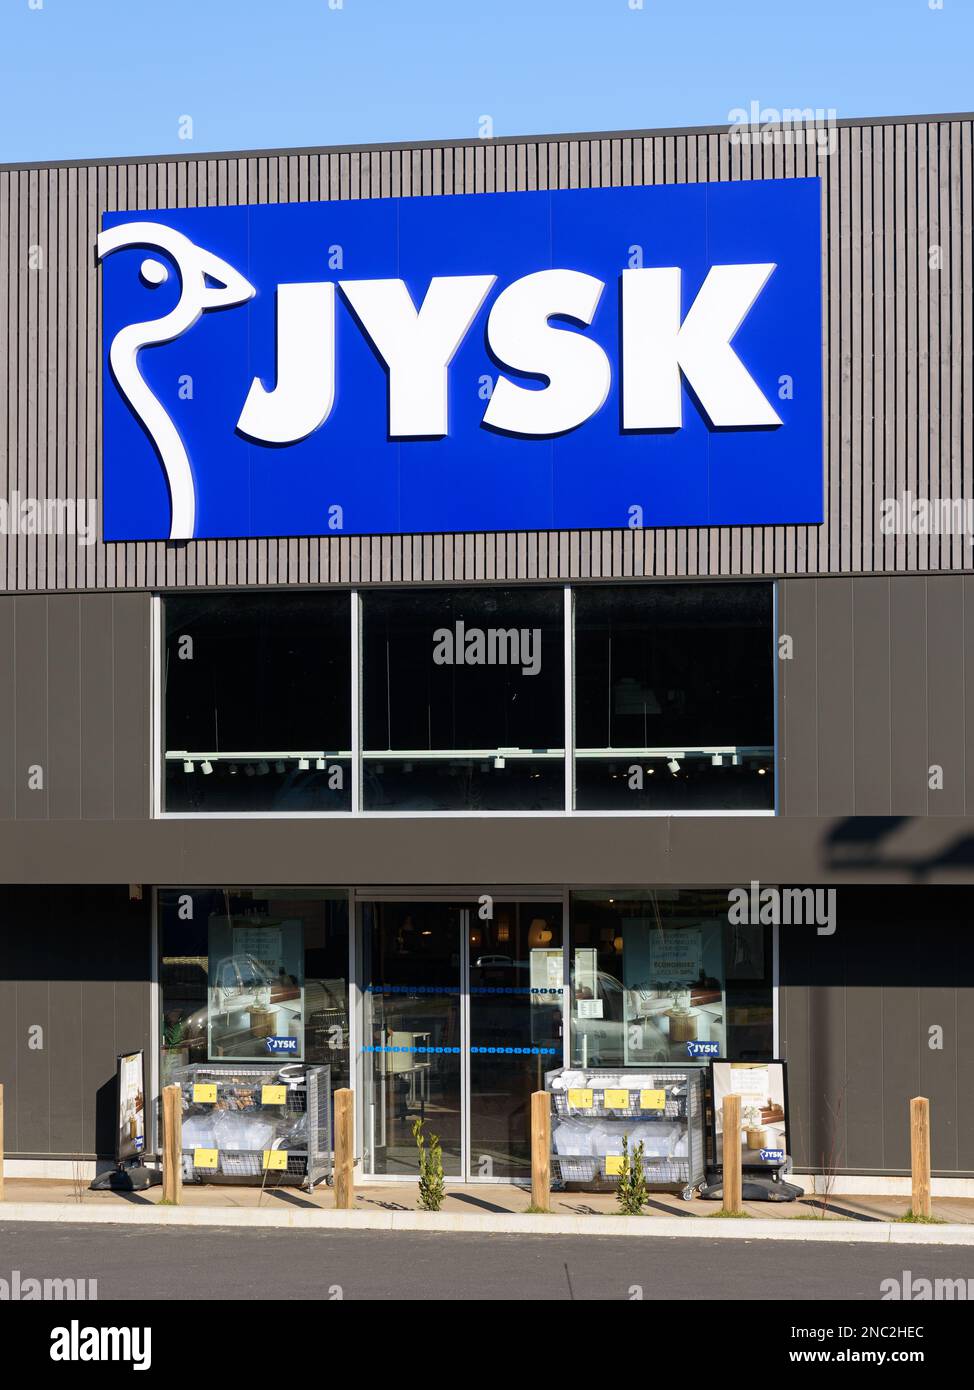 Text mit JYSK-Logo und Markenzeichen am Eingang des Ladens. JYSK ist eine  dänische Einzelhandelskette, die Haushaltswaren wie Matratzen und Möbel  verkauft Stockfotografie - Alamy